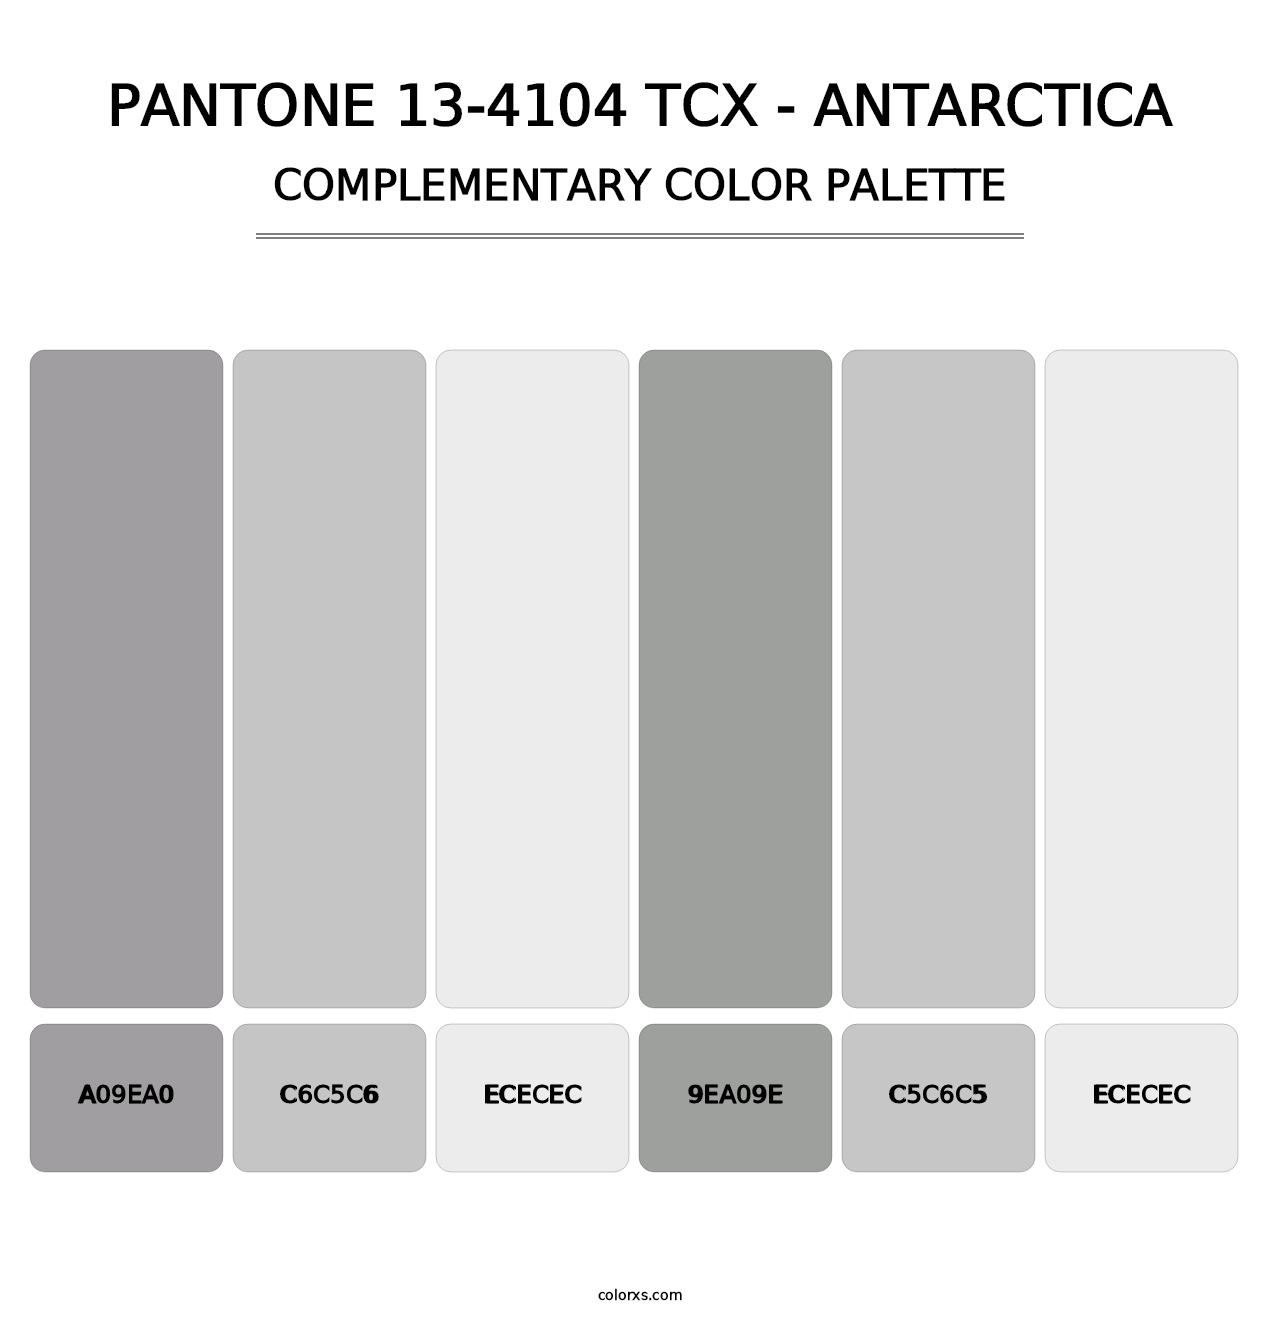 PANTONE 13-4104 TCX - Antarctica - Complementary Color Palette